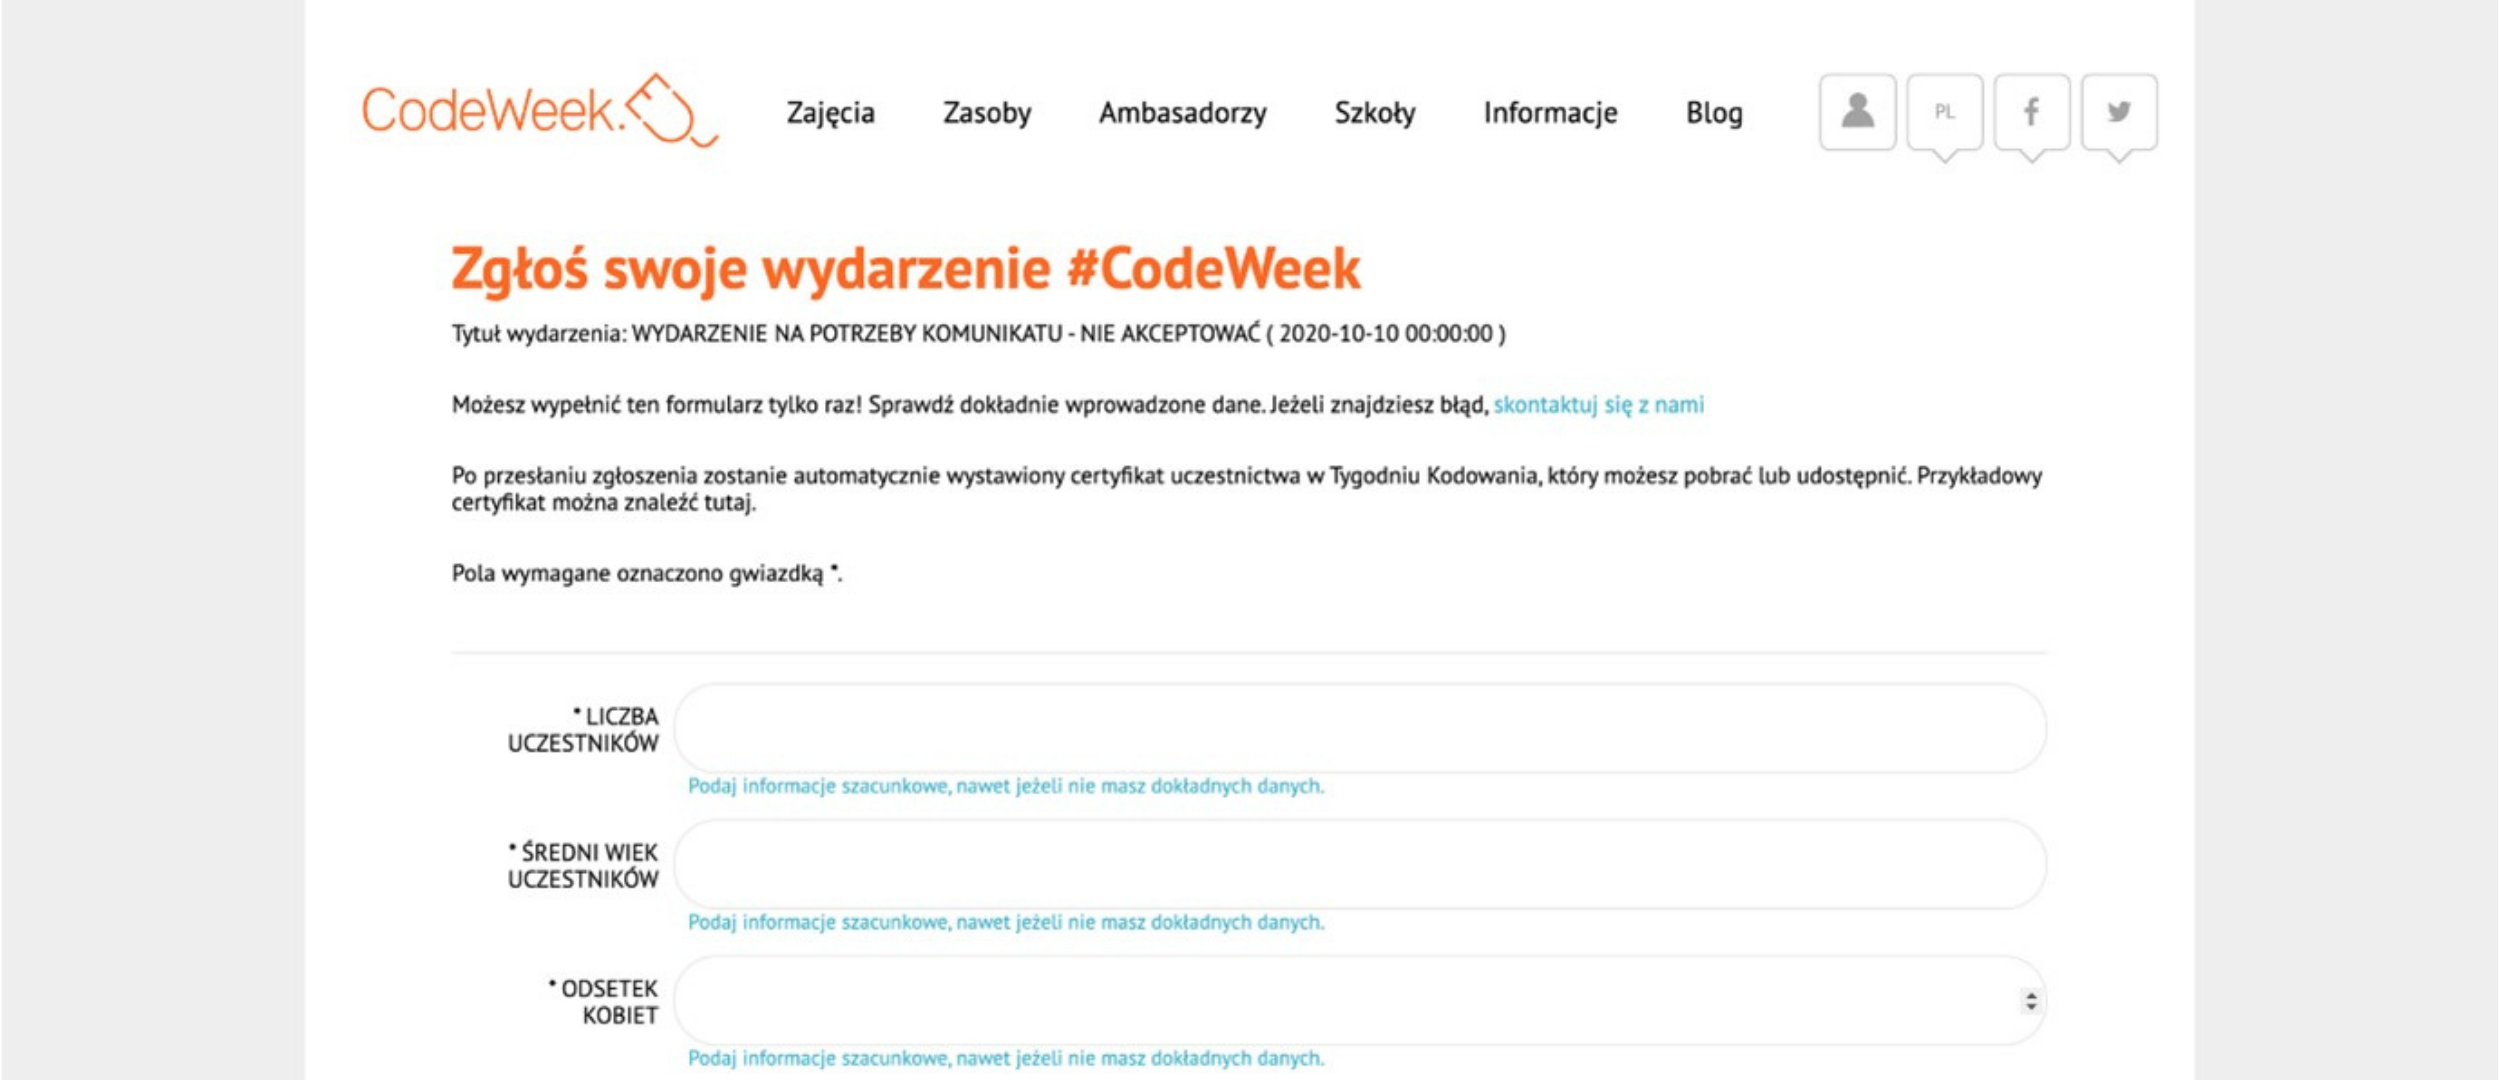 Grafika przedstawia stronę codeweek.eu po kliknięciu przycisku ““Zgłoś wydarzenie i odbierz certyfikat”. Na ekranie znajduje się formularz z tytułem “Zgłoś swoje wydarzenie #CodeWeek2020”. 